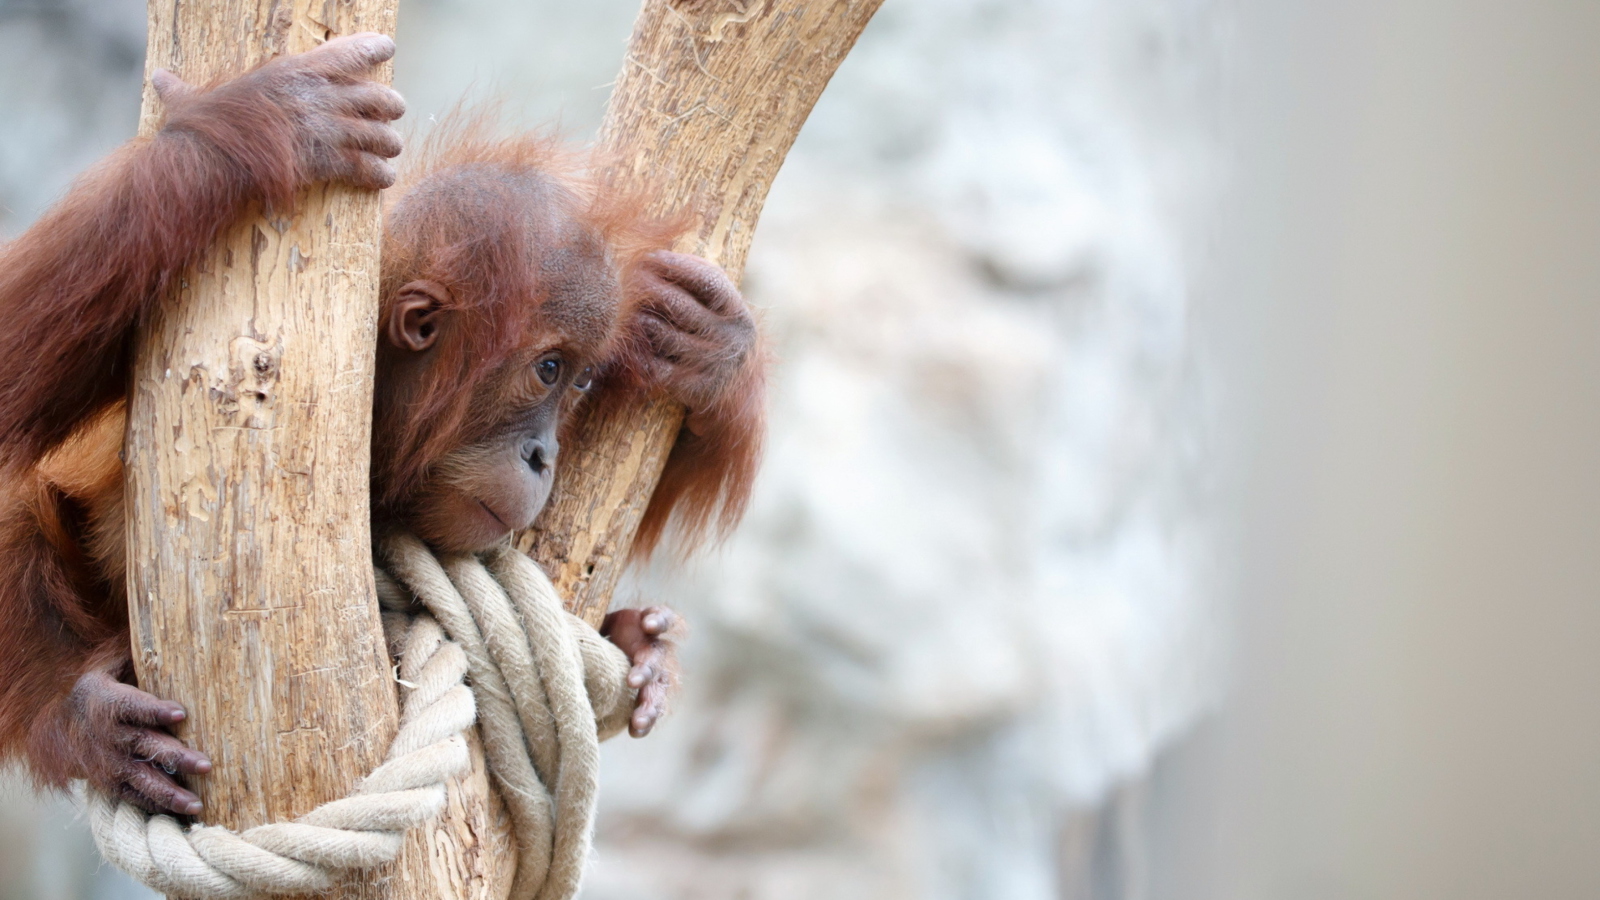 Das Cute Little Monkey In Zoo Wallpaper 1600x900